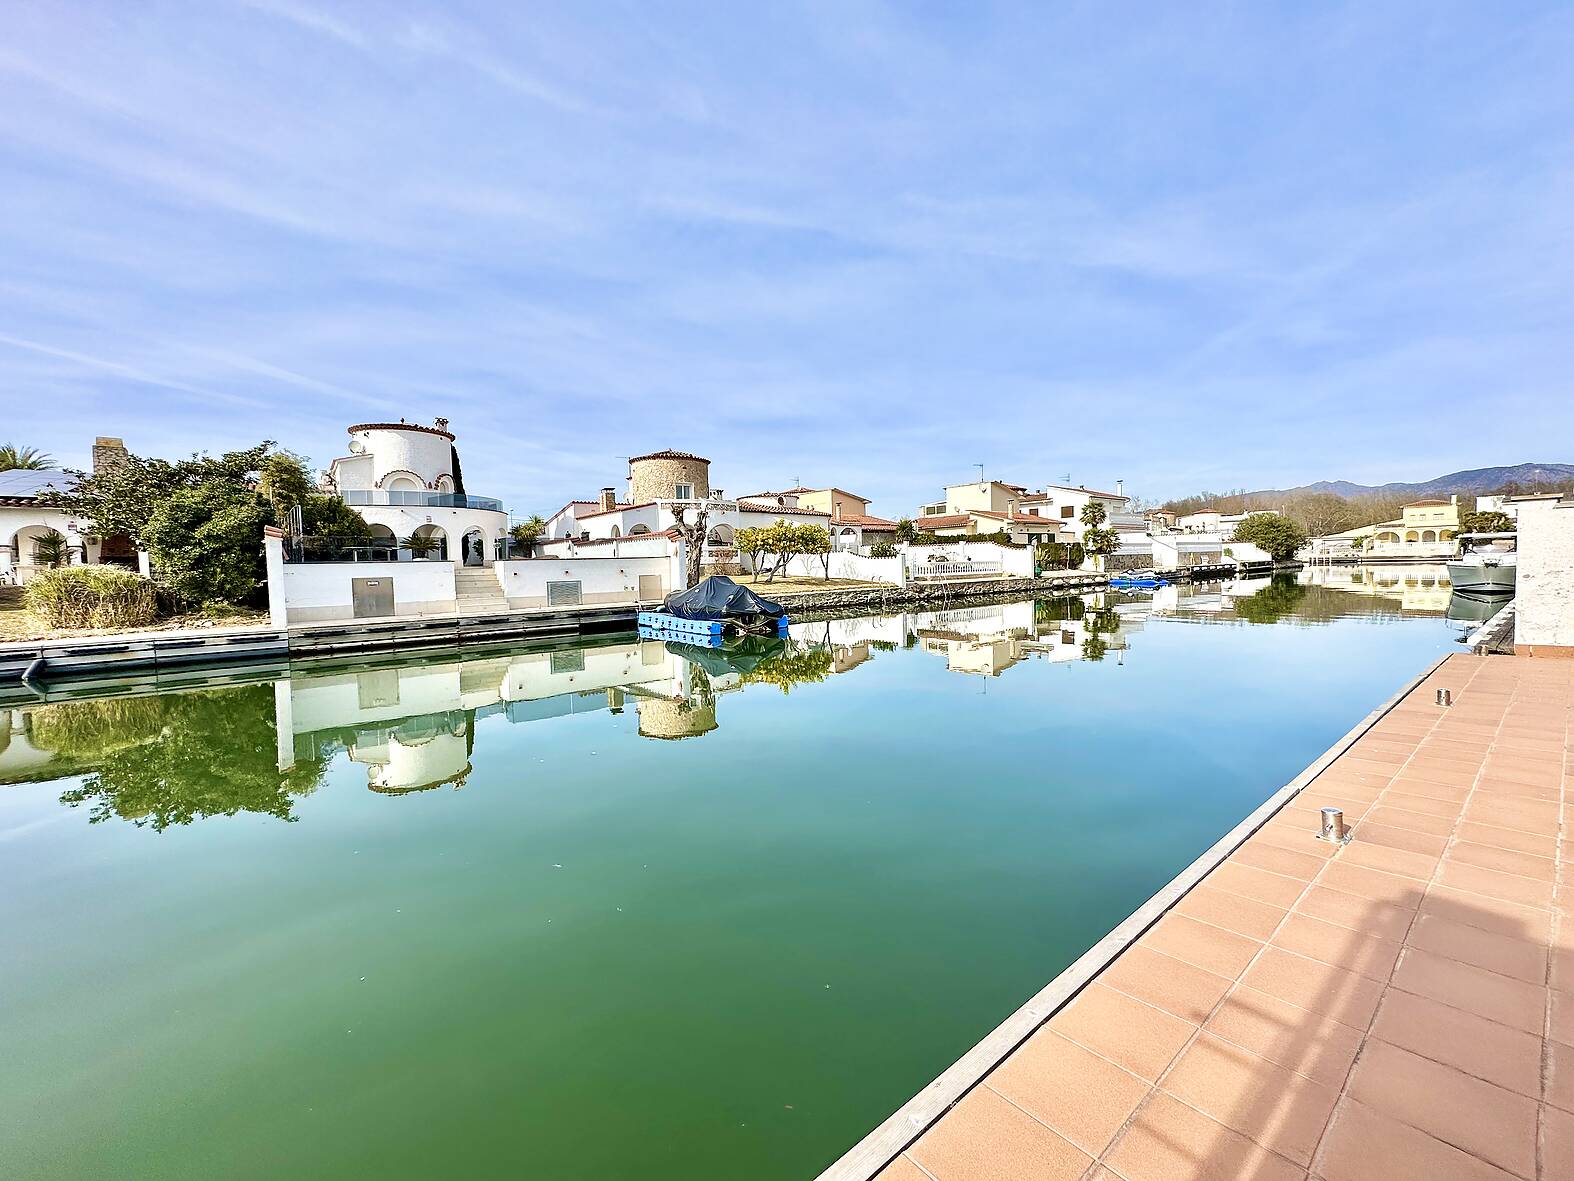 Villa rénovée avec amarre, piscine et garage, idéale pour les amateurs de luxe et de tranquillité.